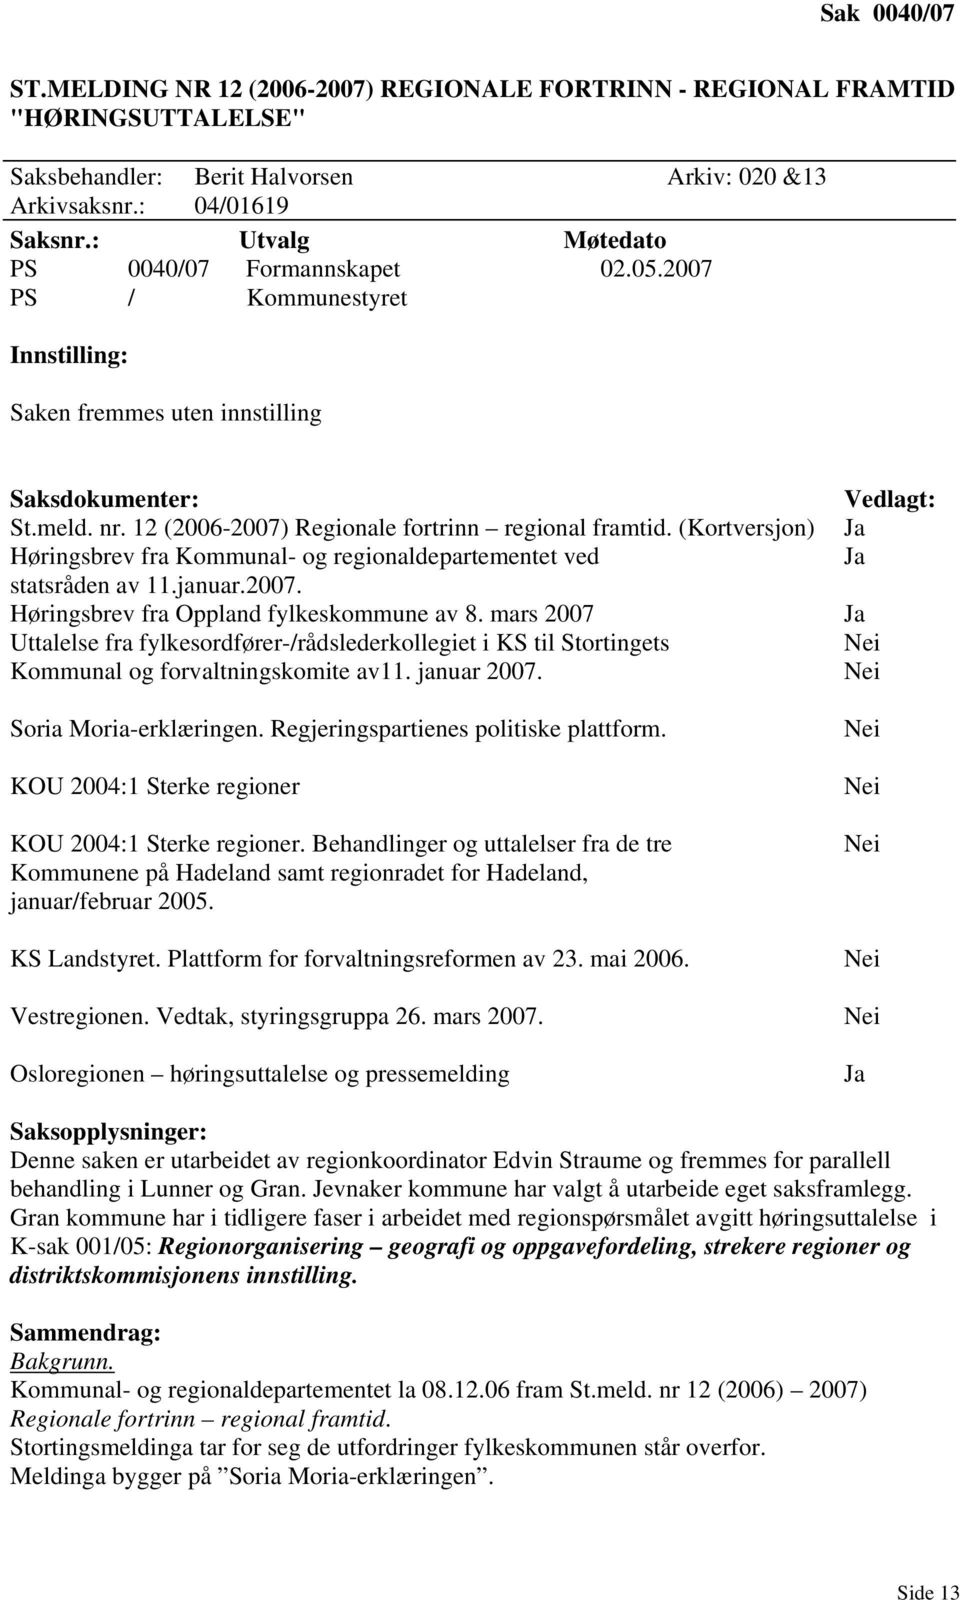 (Kortversjon) Høringsbrev fra Kommunal- og regionaldepartementet ved statsråden av 11.januar.2007. Høringsbrev fra Oppland fylkeskommune av 8.